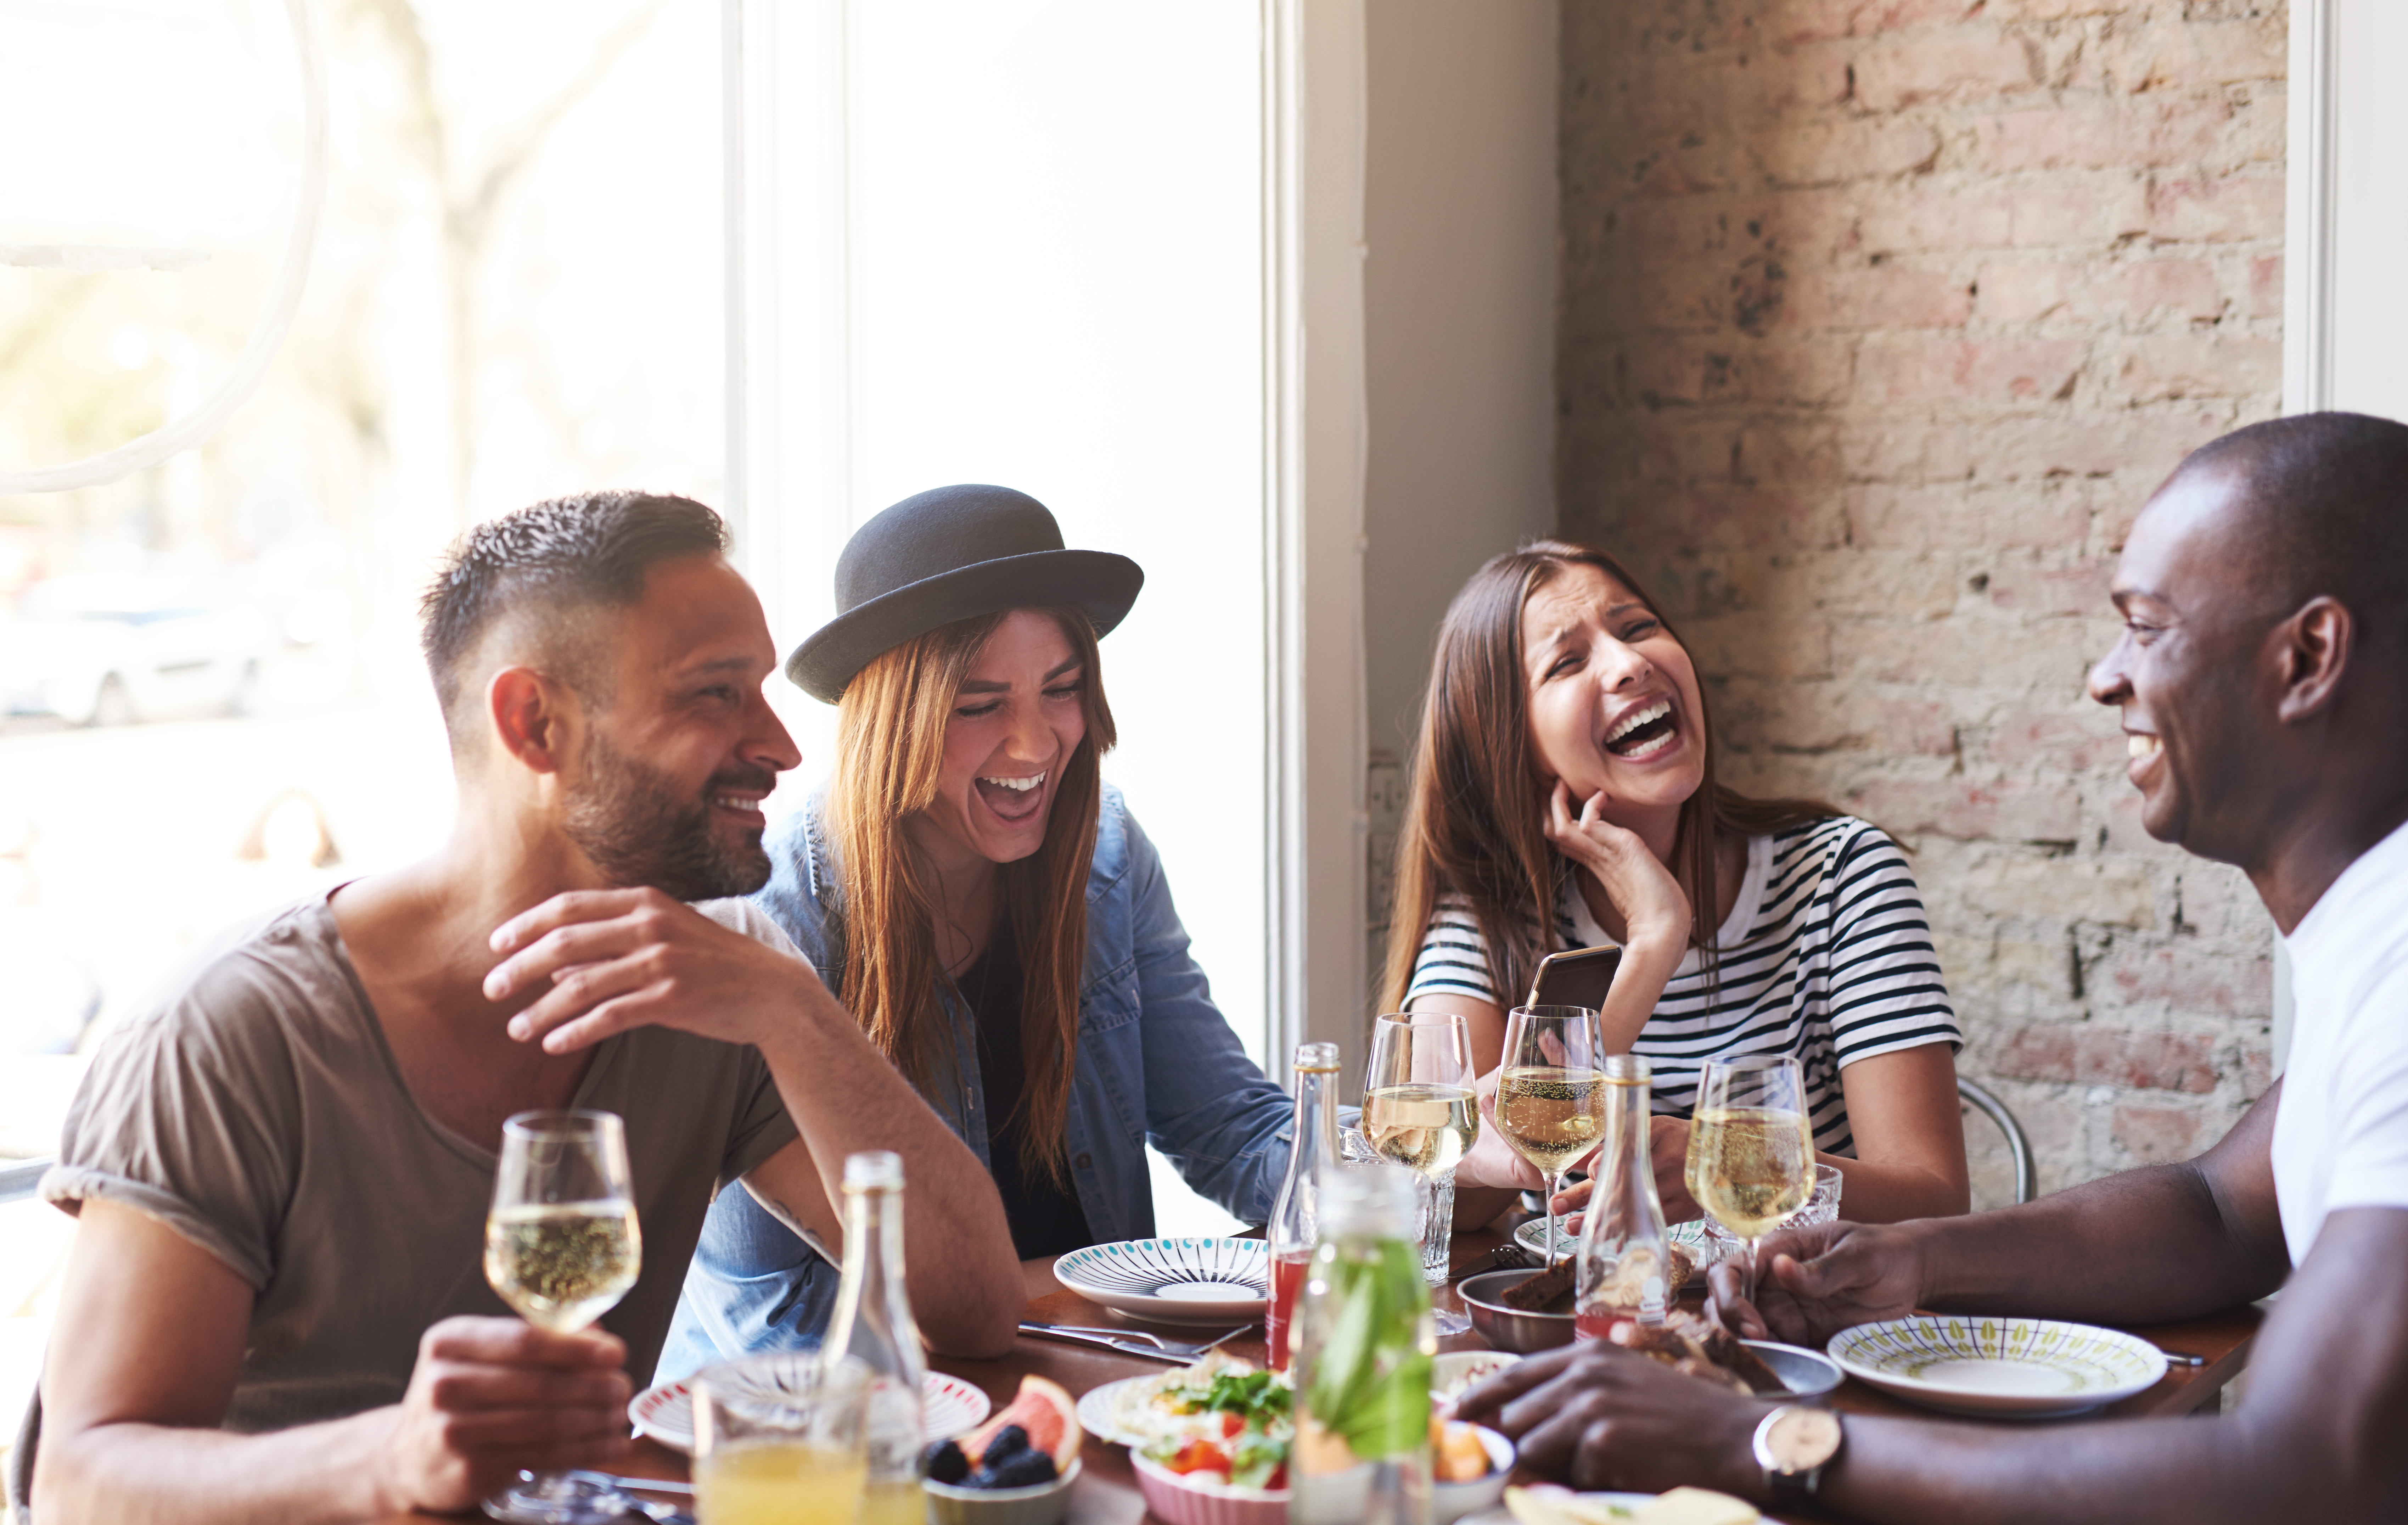 Deux hommes et deux femmes profitant de la compagnie des autres autour d'un repas | Source : Shutterstock